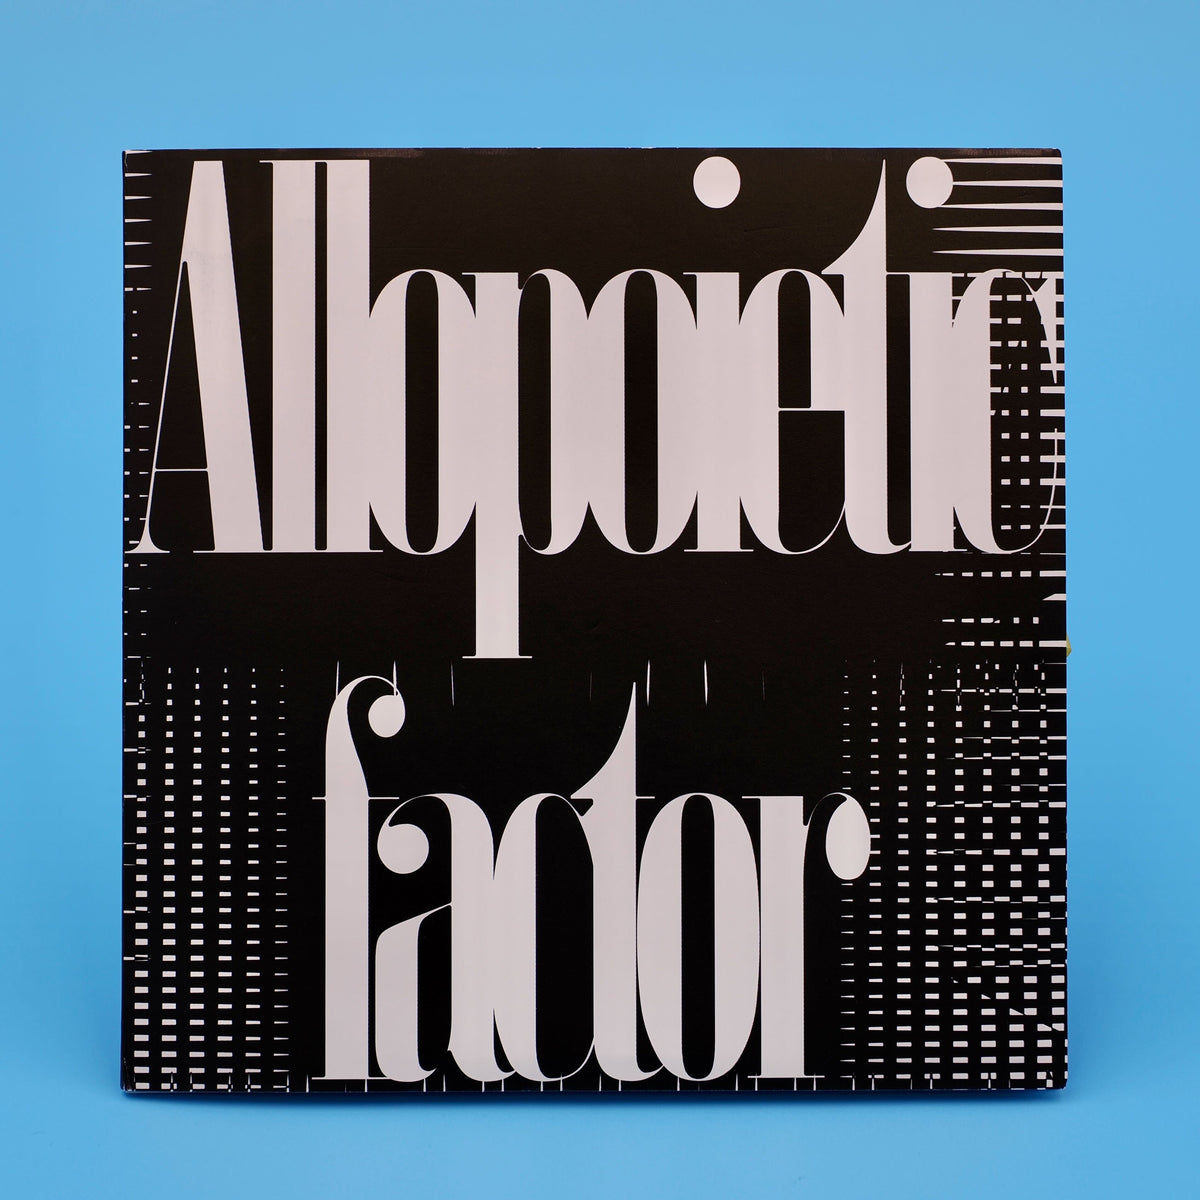 CD：Allopoietic factor – Potziland Records